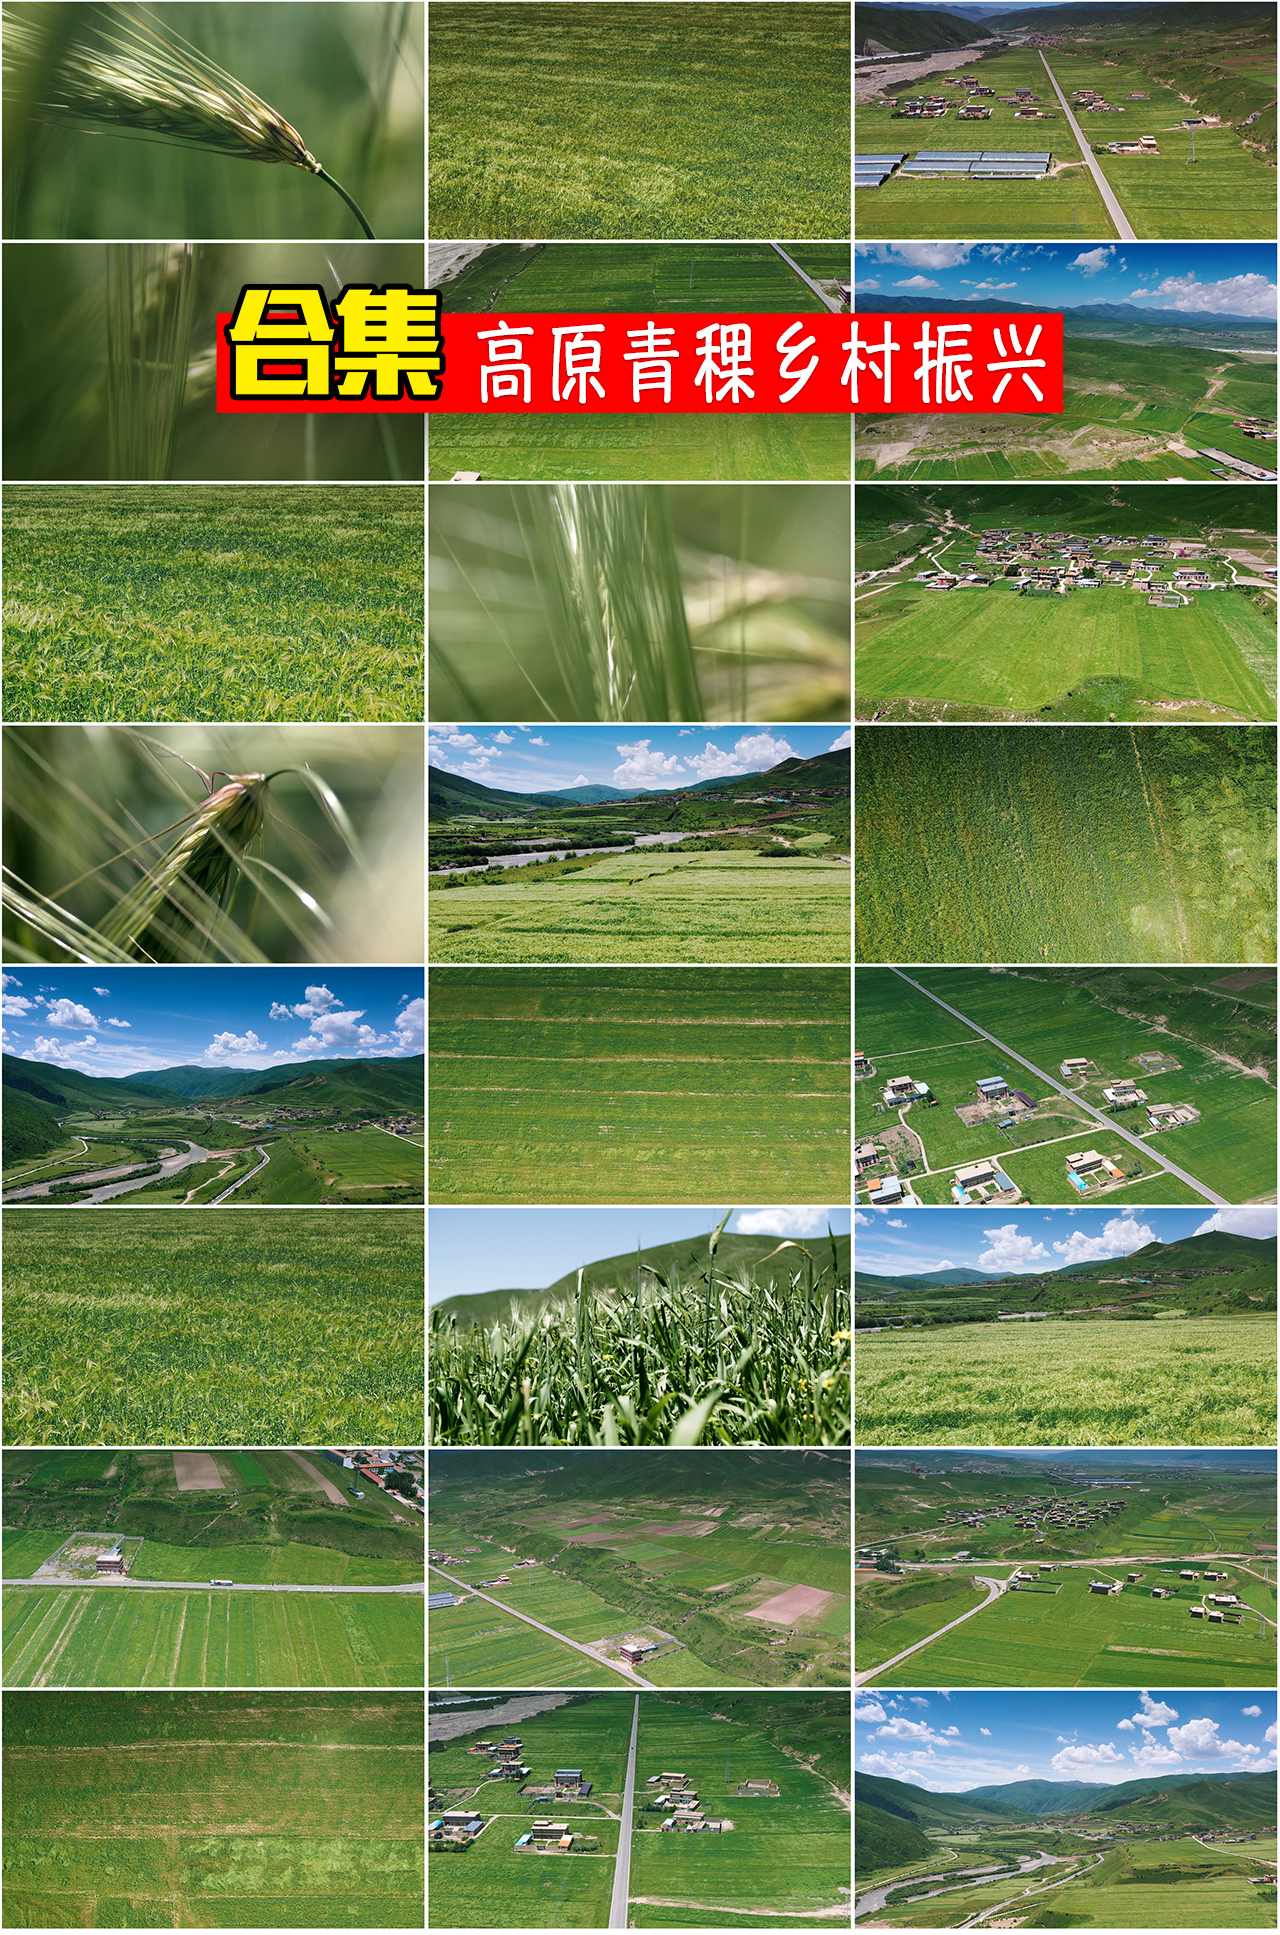 青稞乡村振兴乡村经济农业发展高原农村